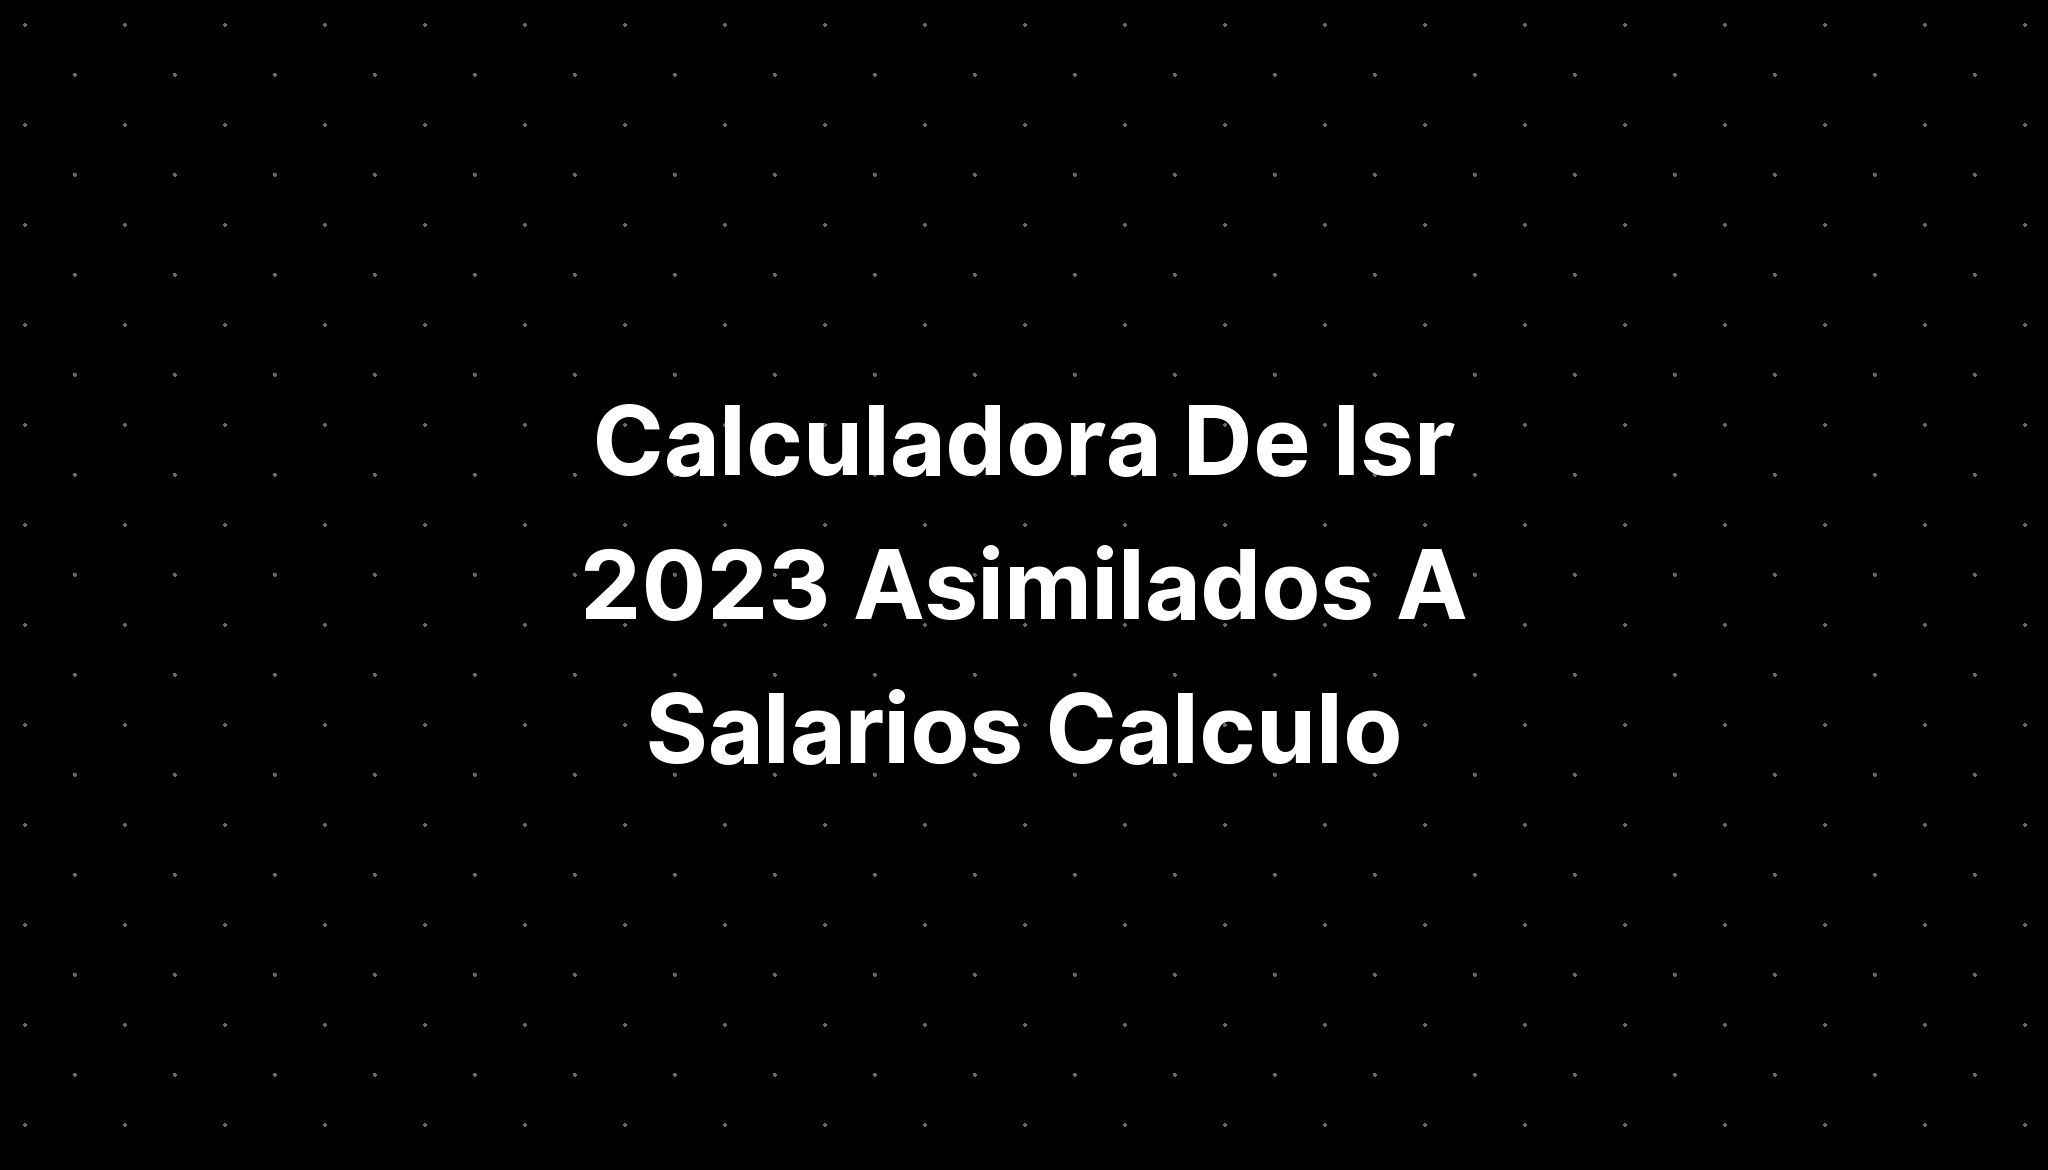 Calculadora De Isr 2023 Asimilados A Salarios Calculo IMAGESEE